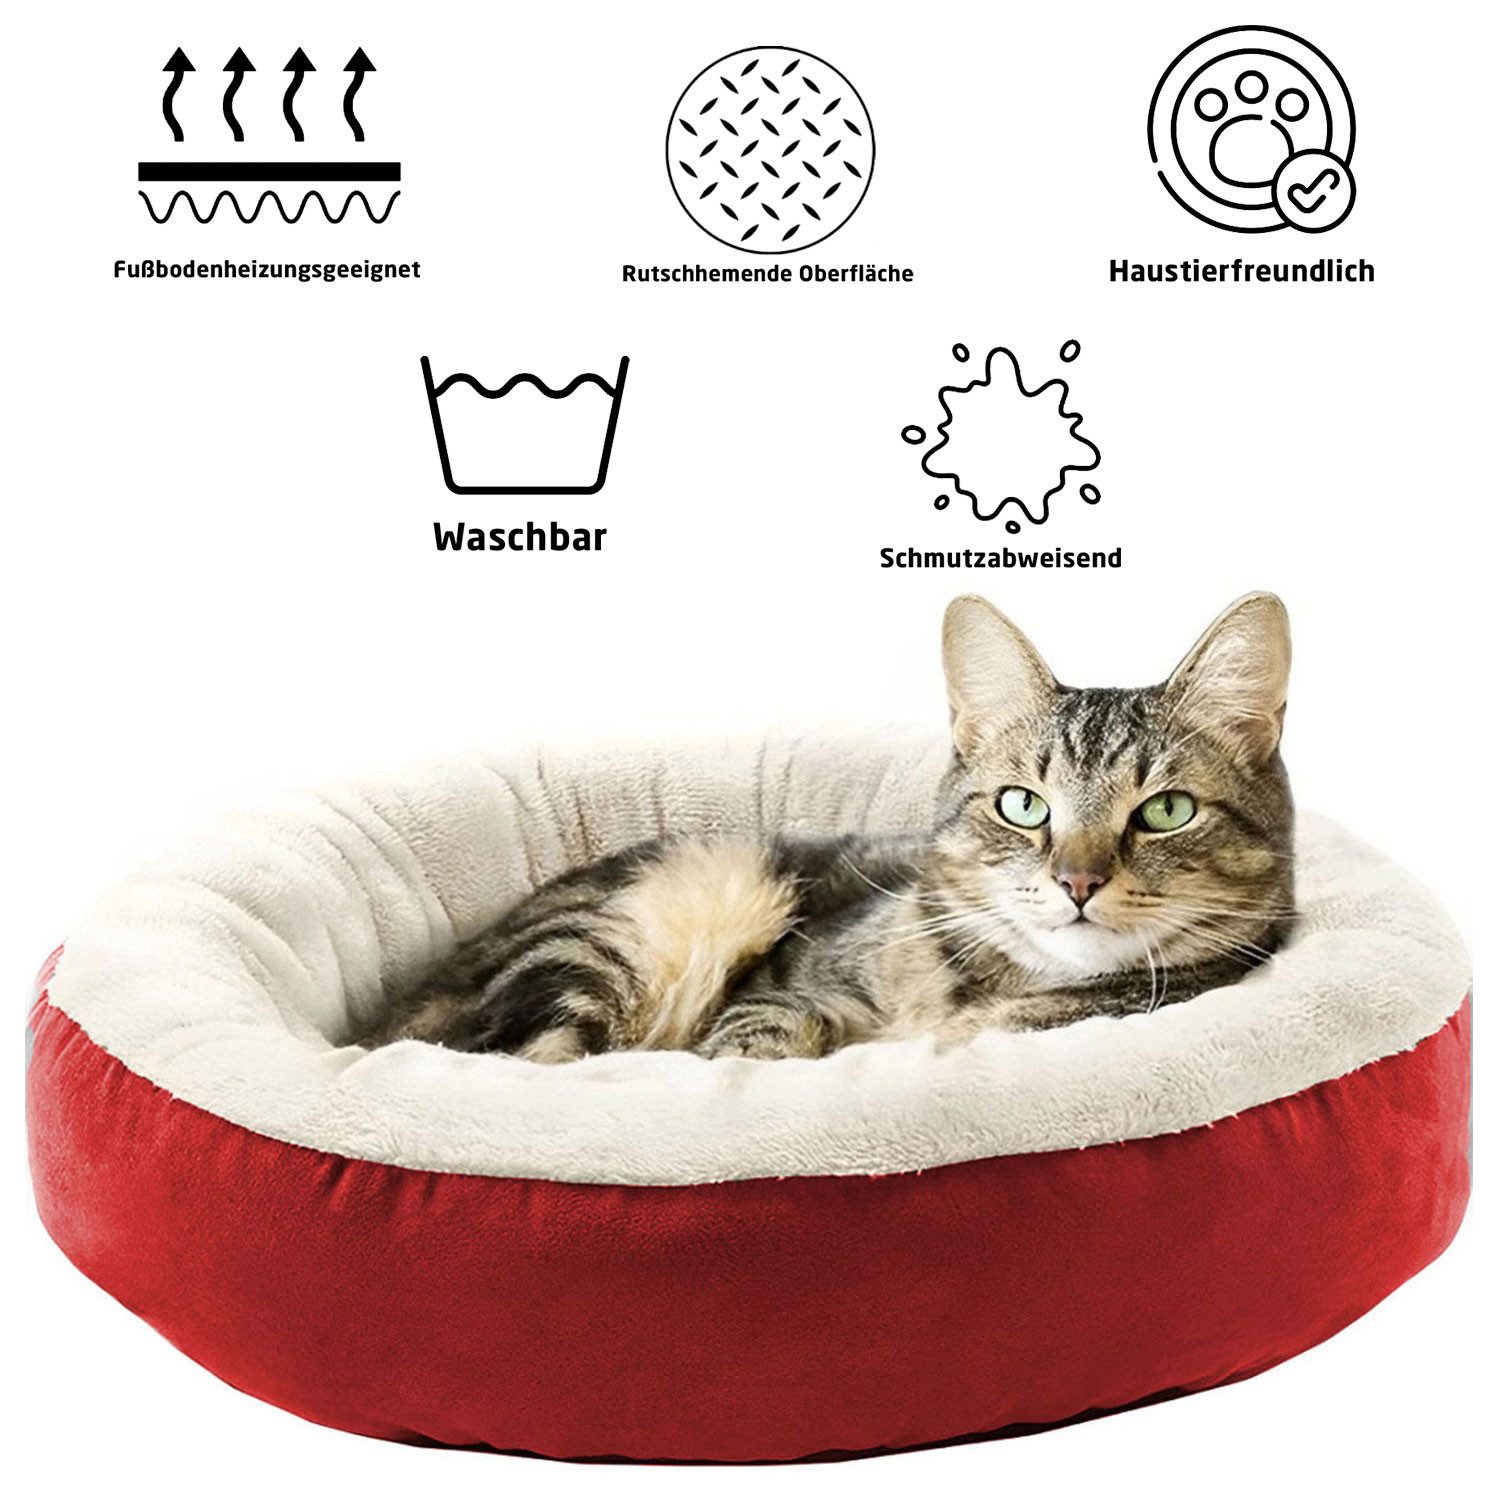 Jungengel Katzenliege Katzenkissen Katzenbett 55cm in Grau & Rot Extra Soft Tierkissen, Indoorgeeignet, Fußbodenheizungsgeeignet, Allergikerfreundlich